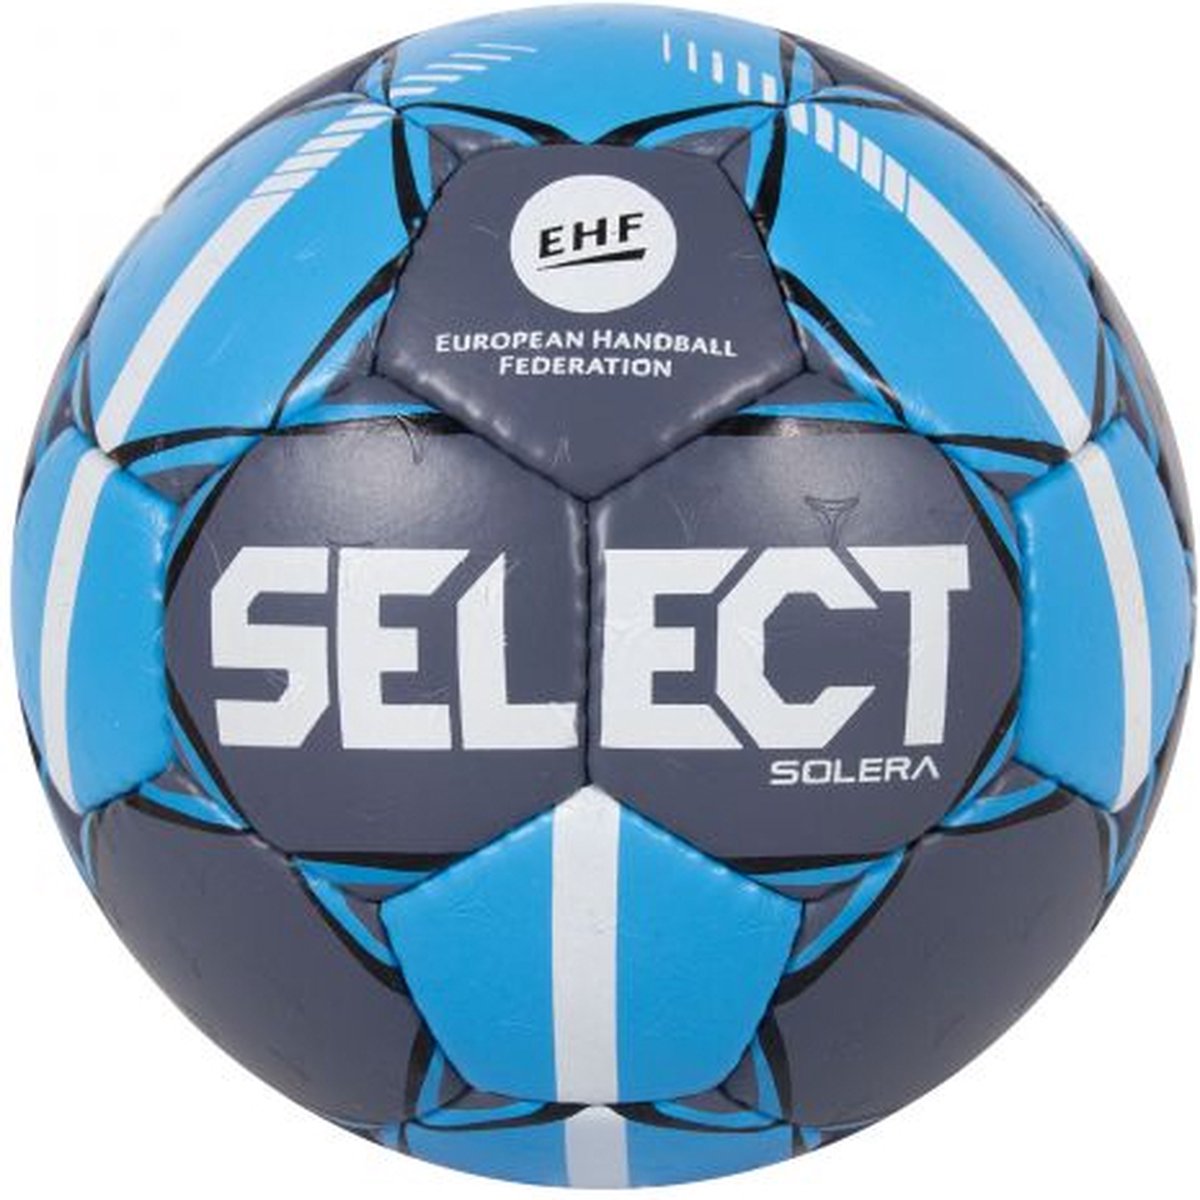 Select Solera Handbal - Maat 0